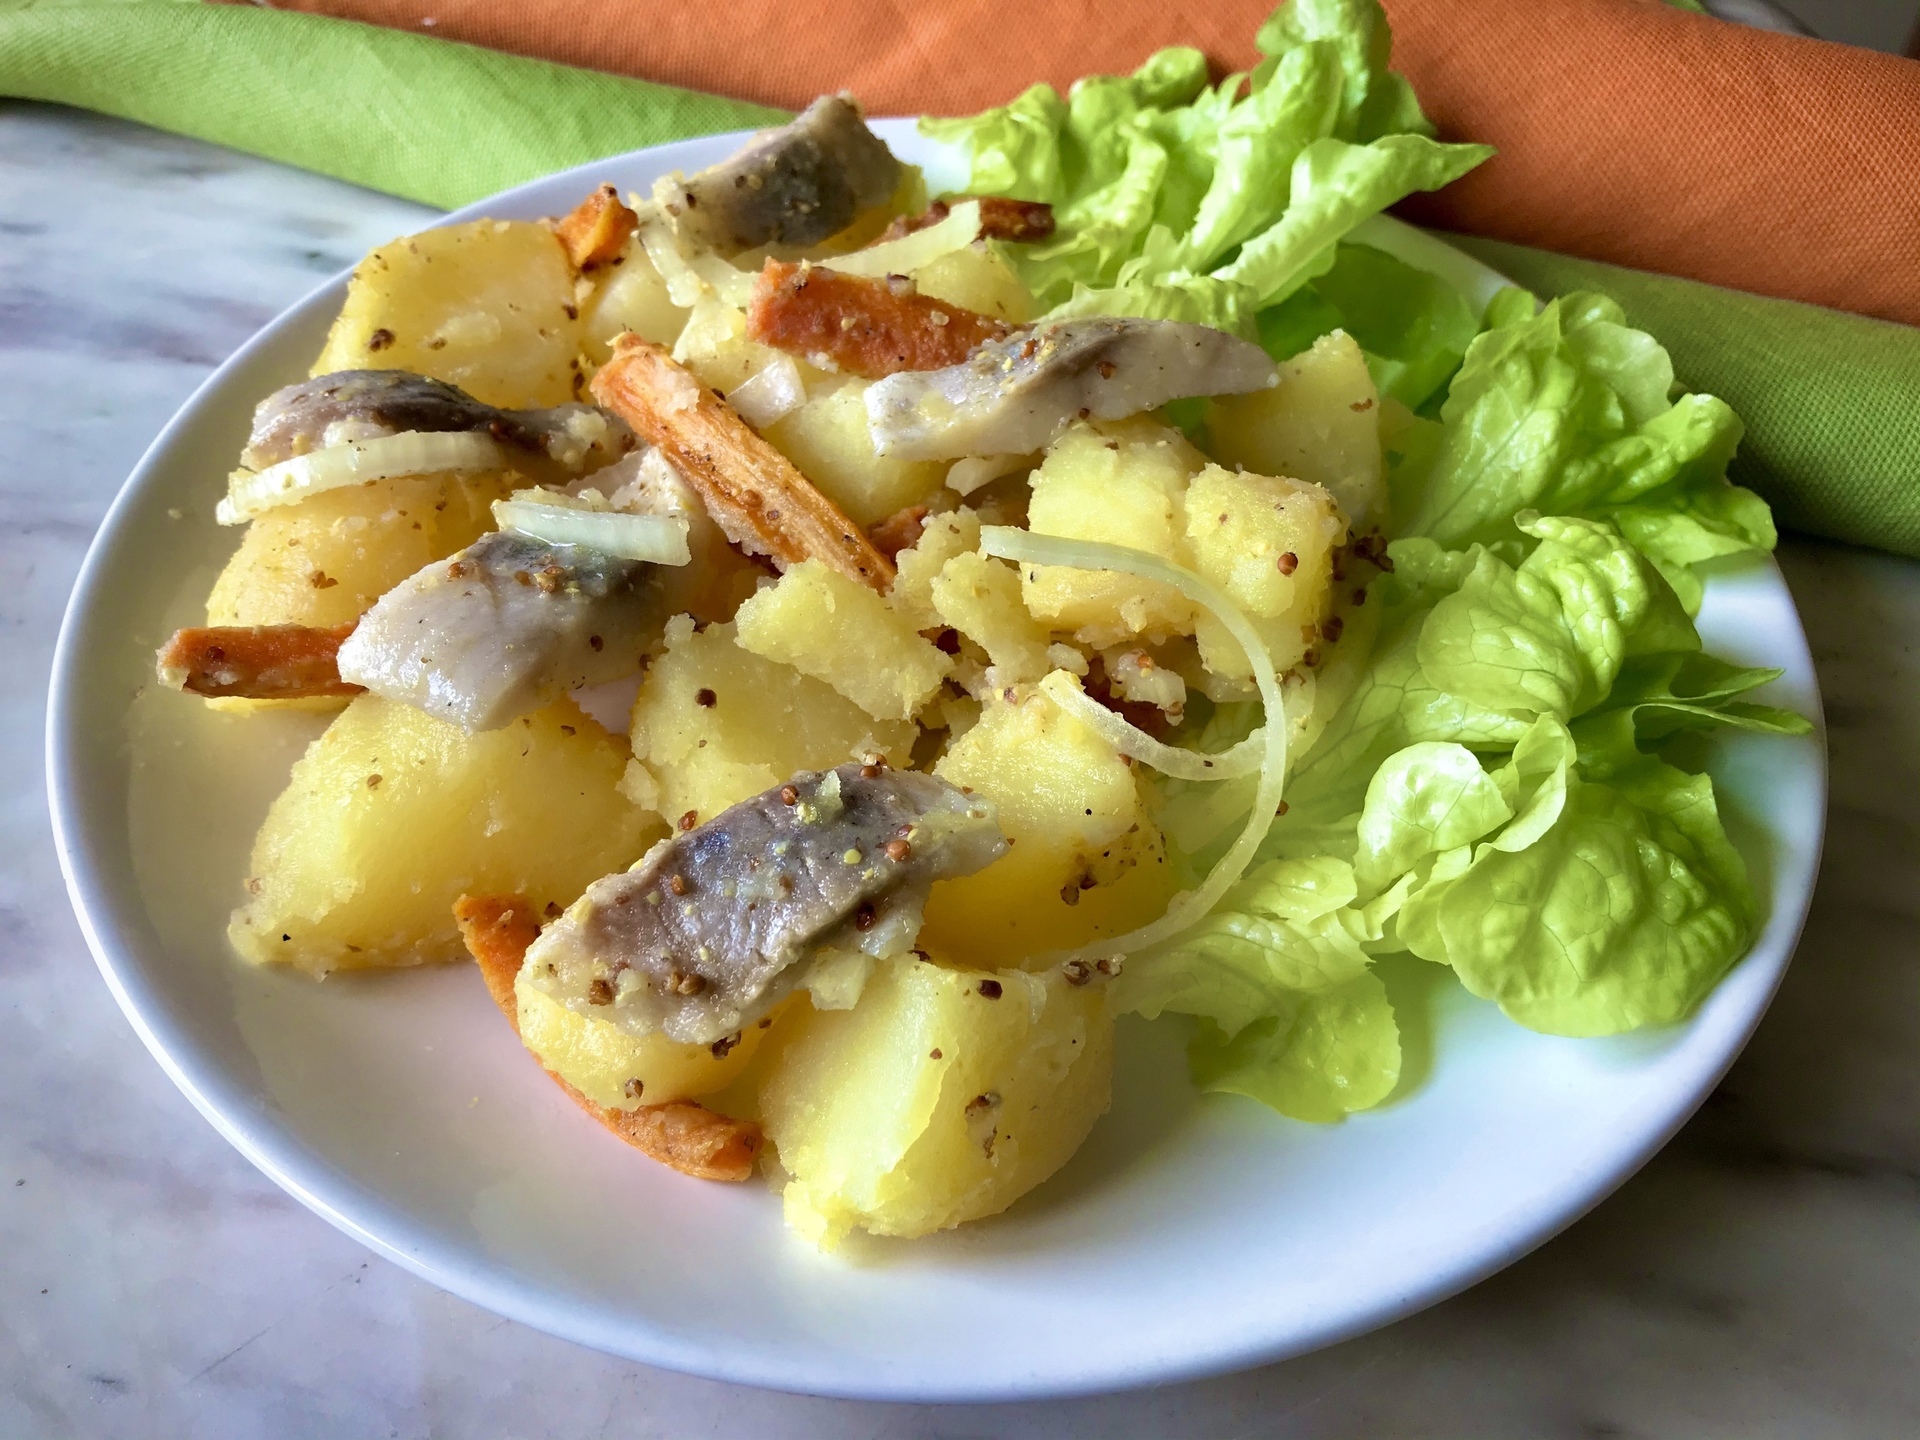 Фото к рецепту: Салат с картошкой и селедкой